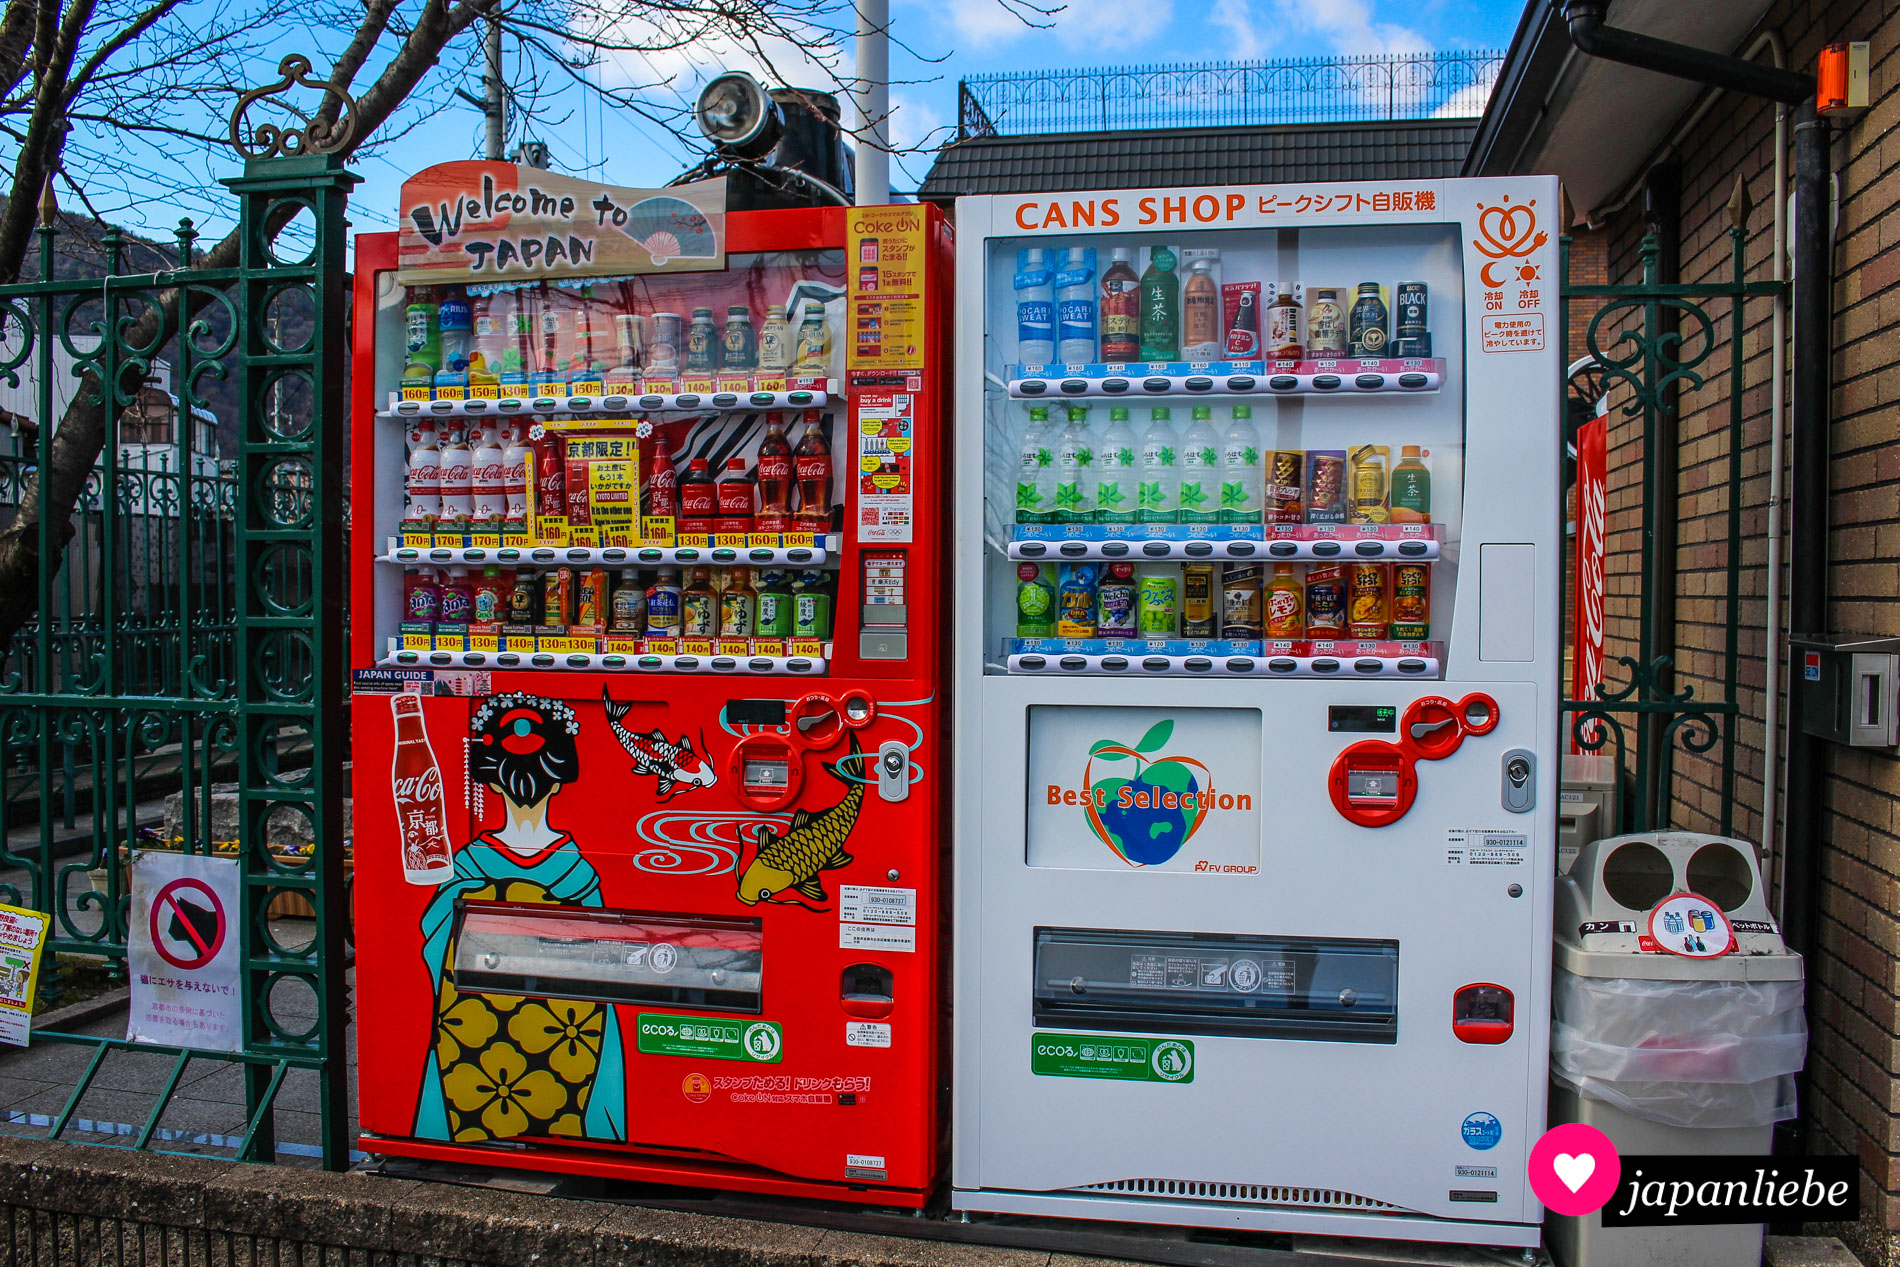 Hübscher Getränkeautomat mit Karpfen- und Geishadesign in Arashiyama, Kyōto.